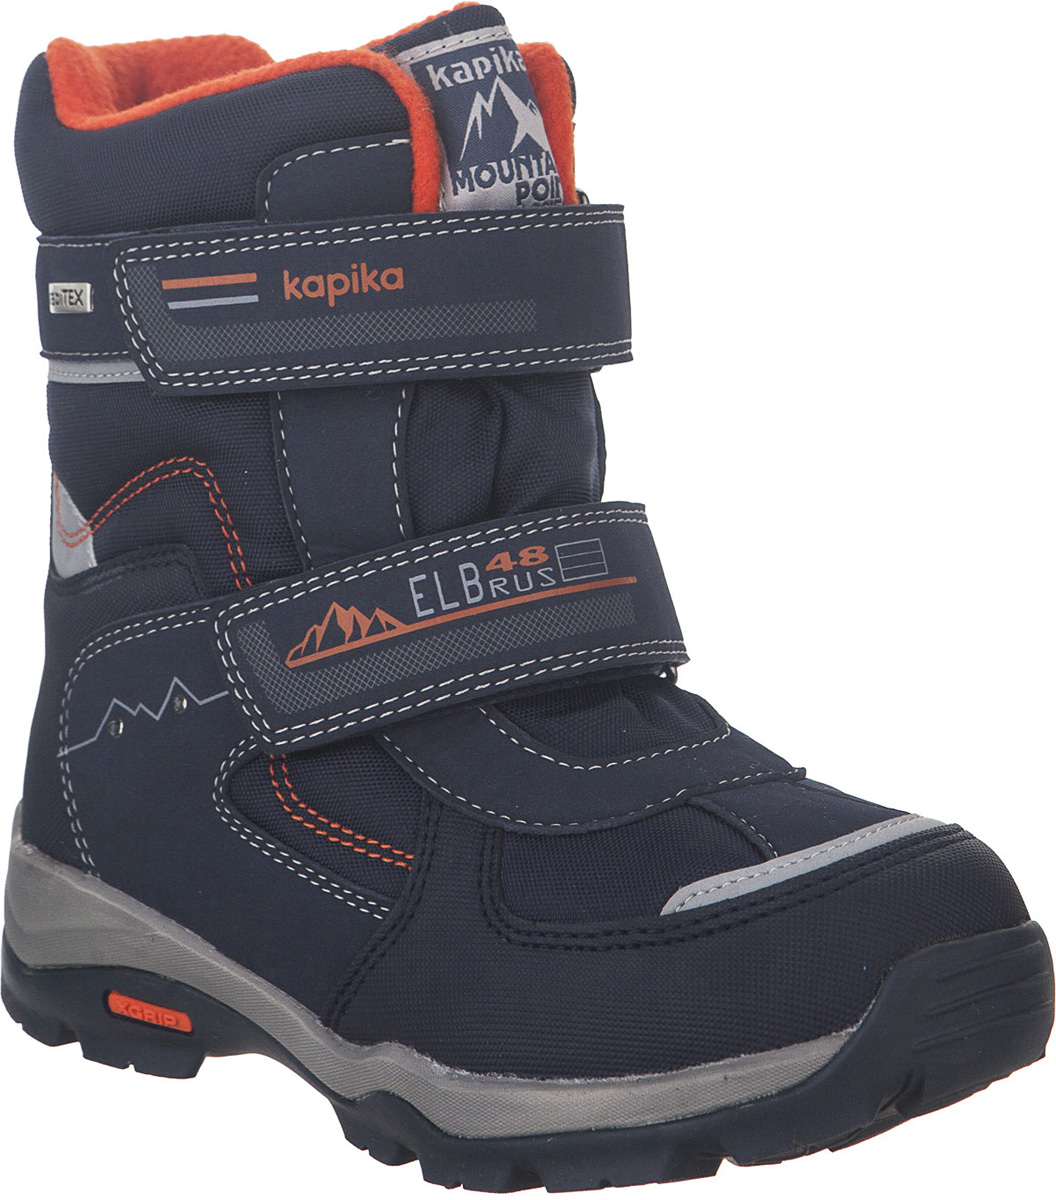 Ботинки для мальчика Kapika KapiTEX, цвет: темно-синий. 43199-1. Размер 32